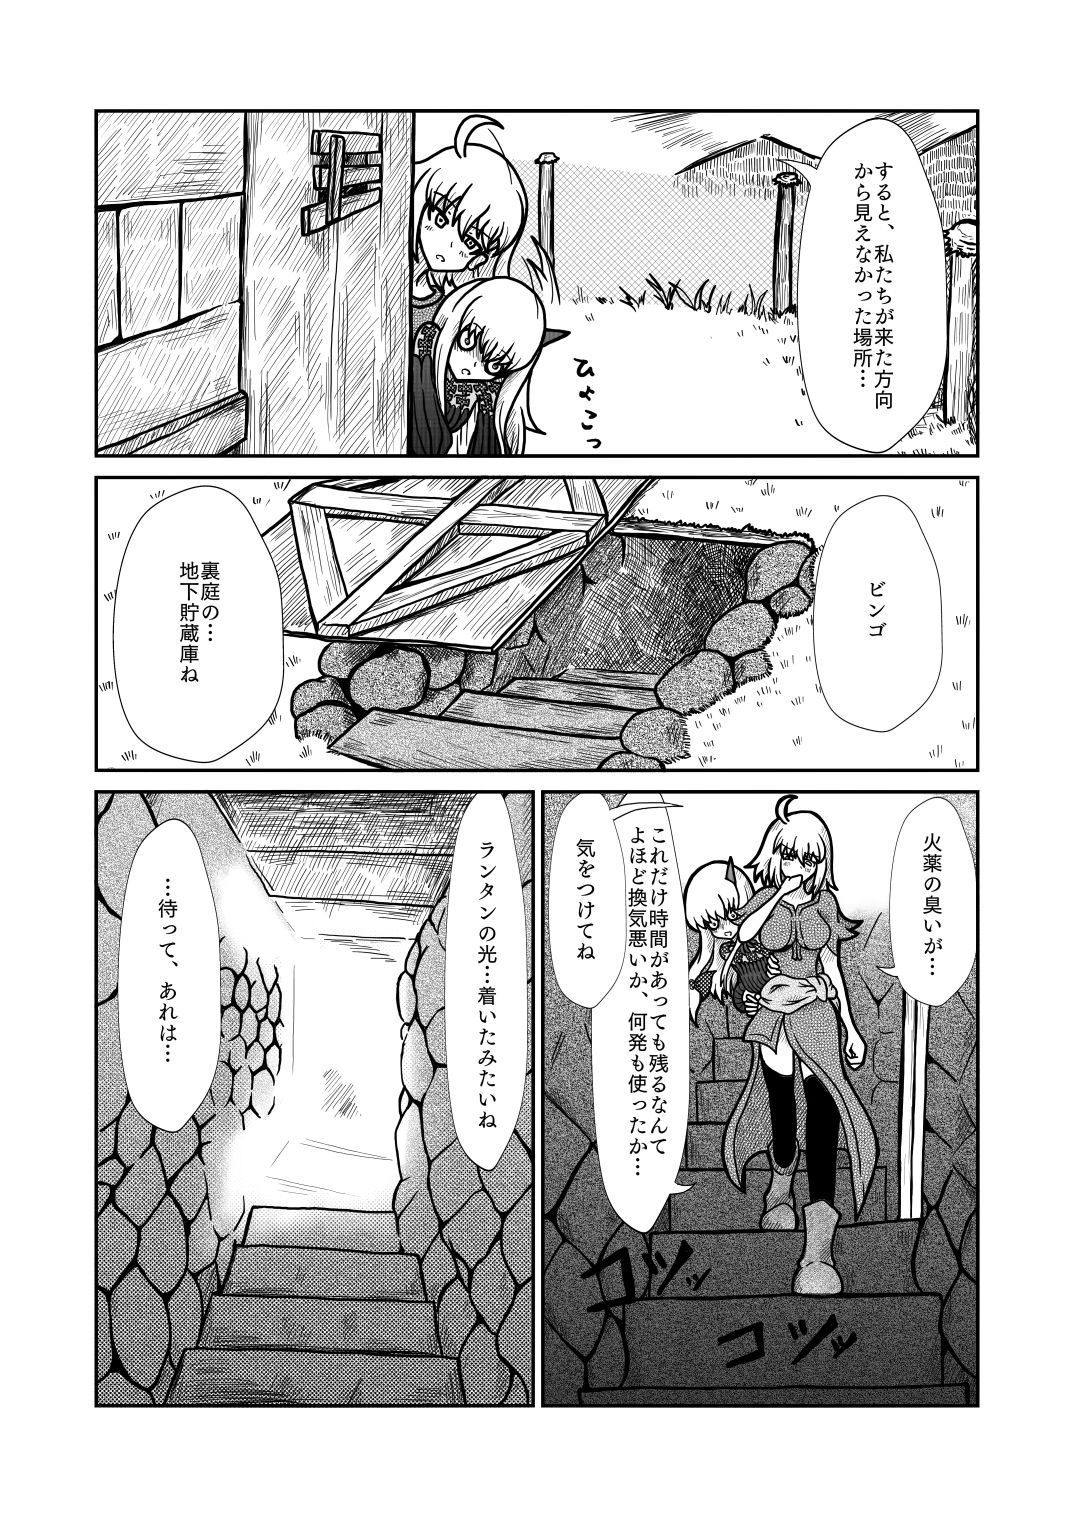 [Shigato] Jeanne x Lavi Dunwich Kai Kikou (Fate/Grand Order, Cthulhu Mythos) [Digital] 21